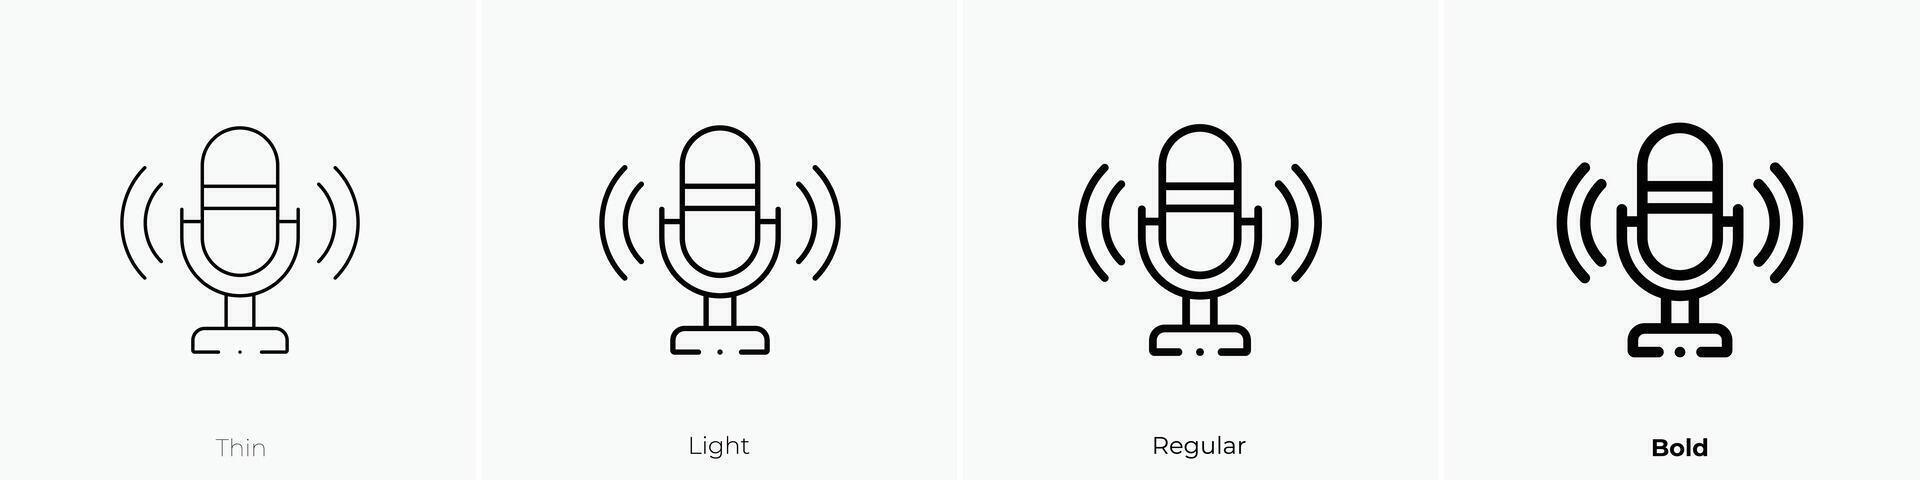 mikrofon ikon. tunn, ljus, regelbunden och djärv stil design isolerat på vit bakgrund vektor